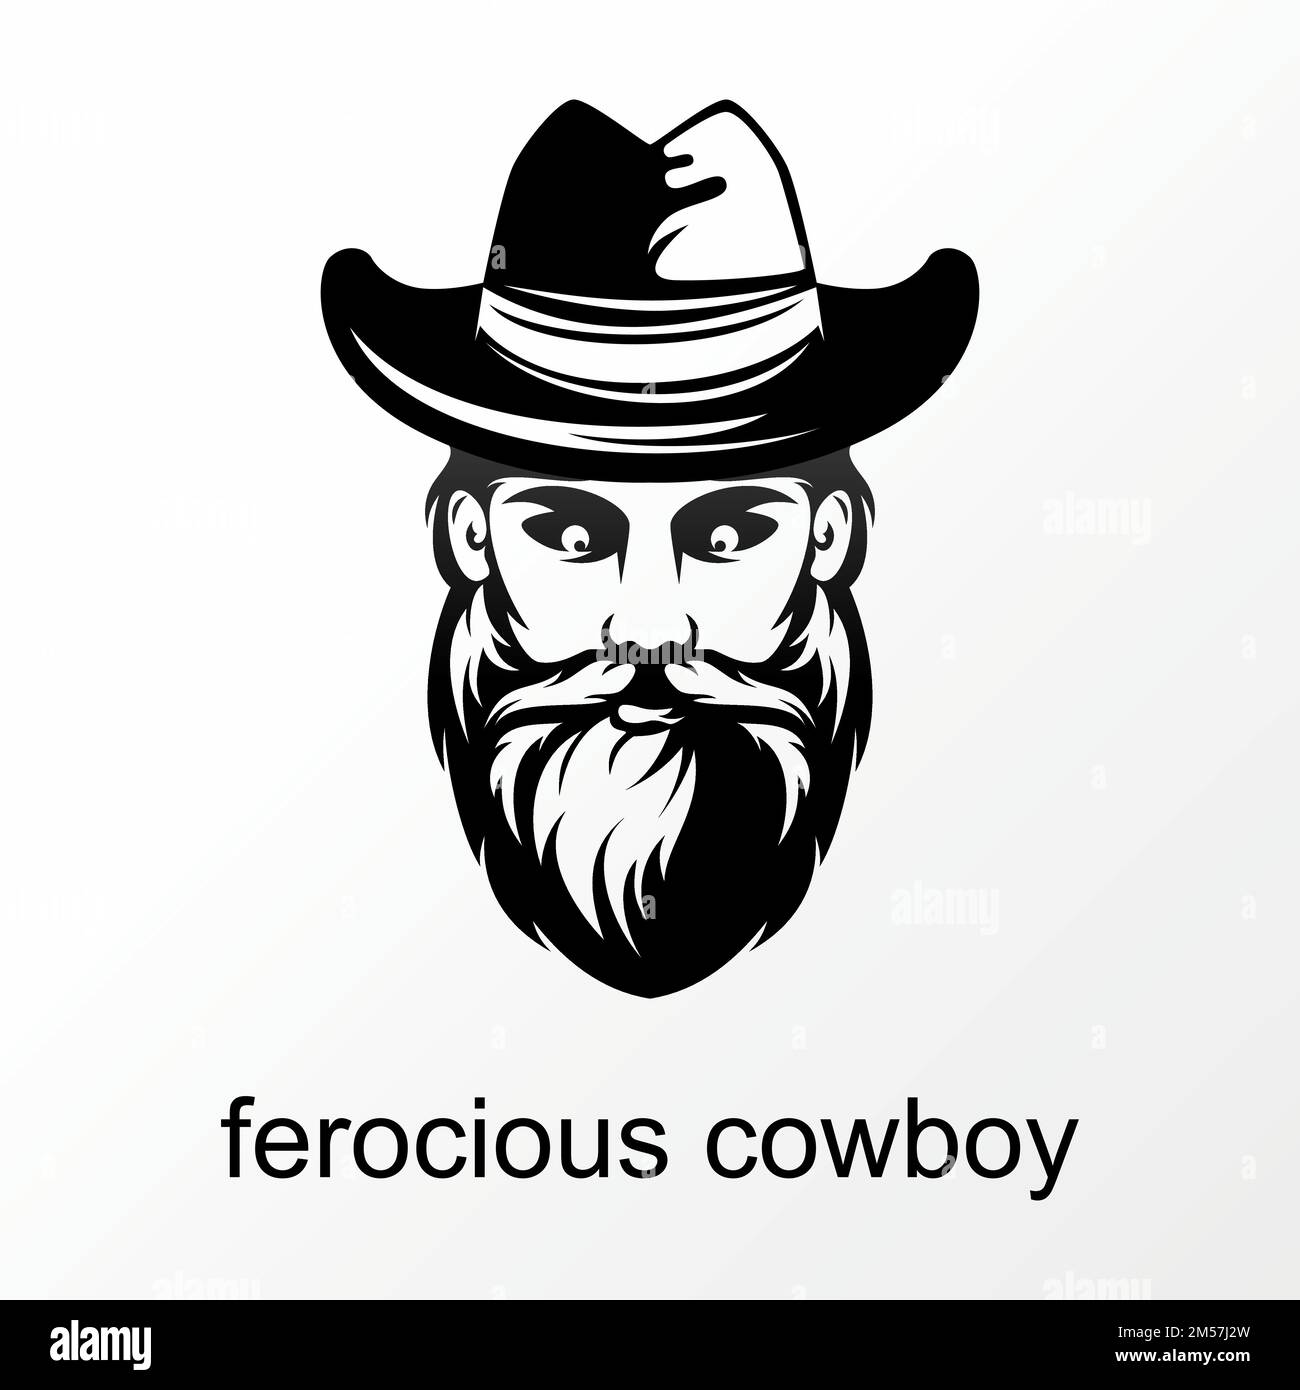 Semplice e unico viso feroce cowboy con cappello, baffi e barba grafica logo design concept stock vettoriale. r relativo a gentleman o carattere Illustrazione Vettoriale